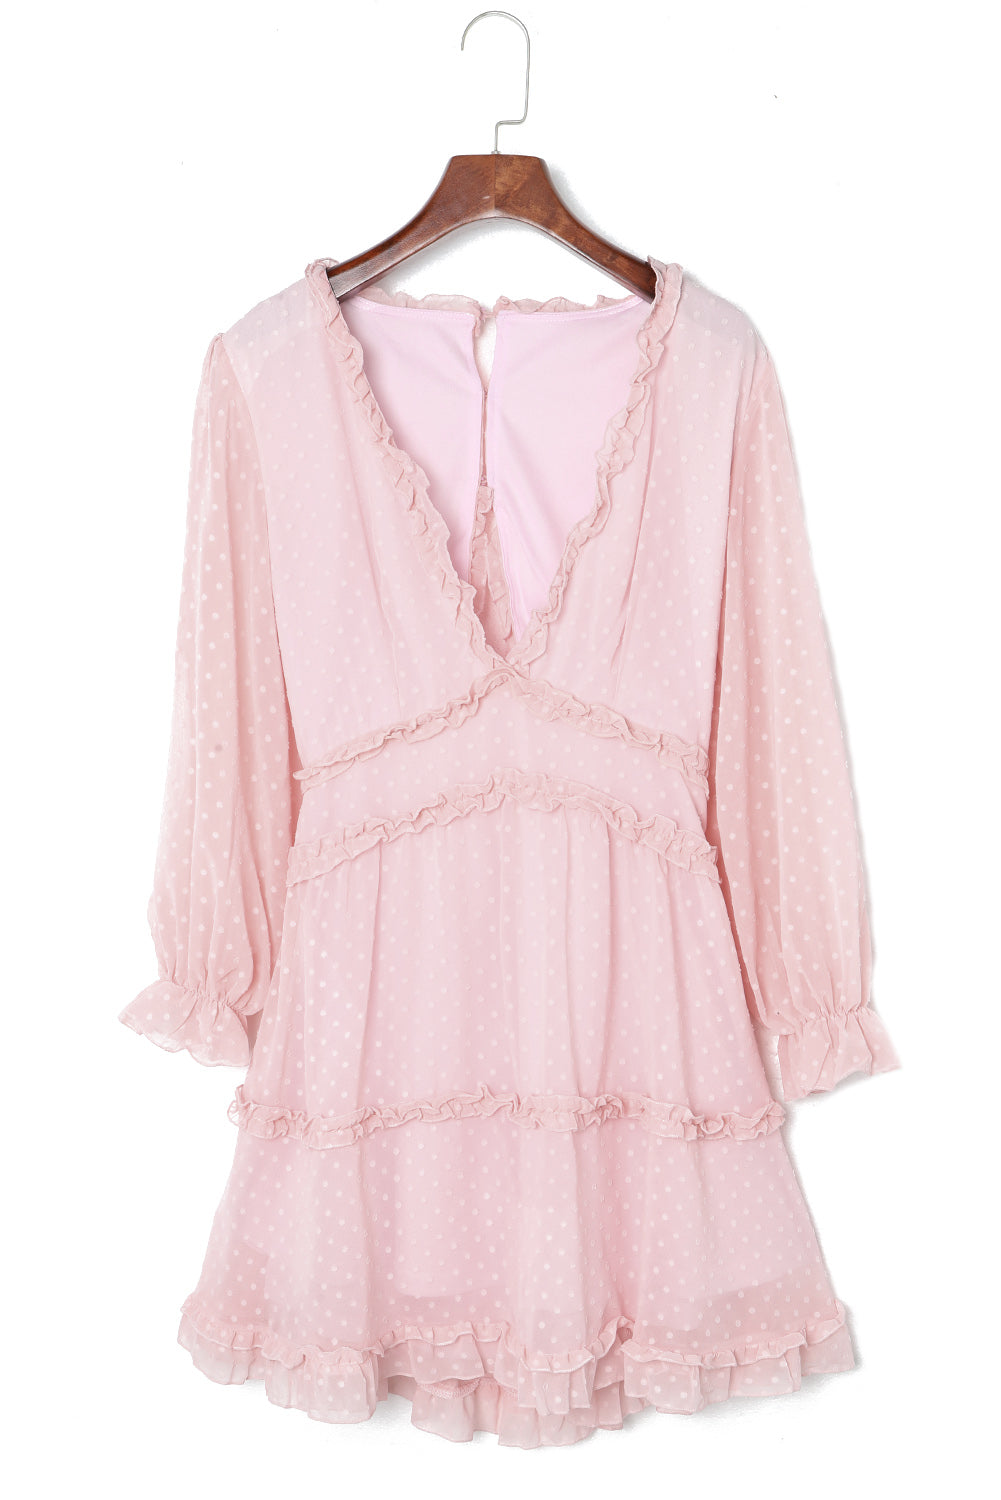 Mini-robe rose superposée à volants, dos ouvert, manches bouffantes, pois suisses